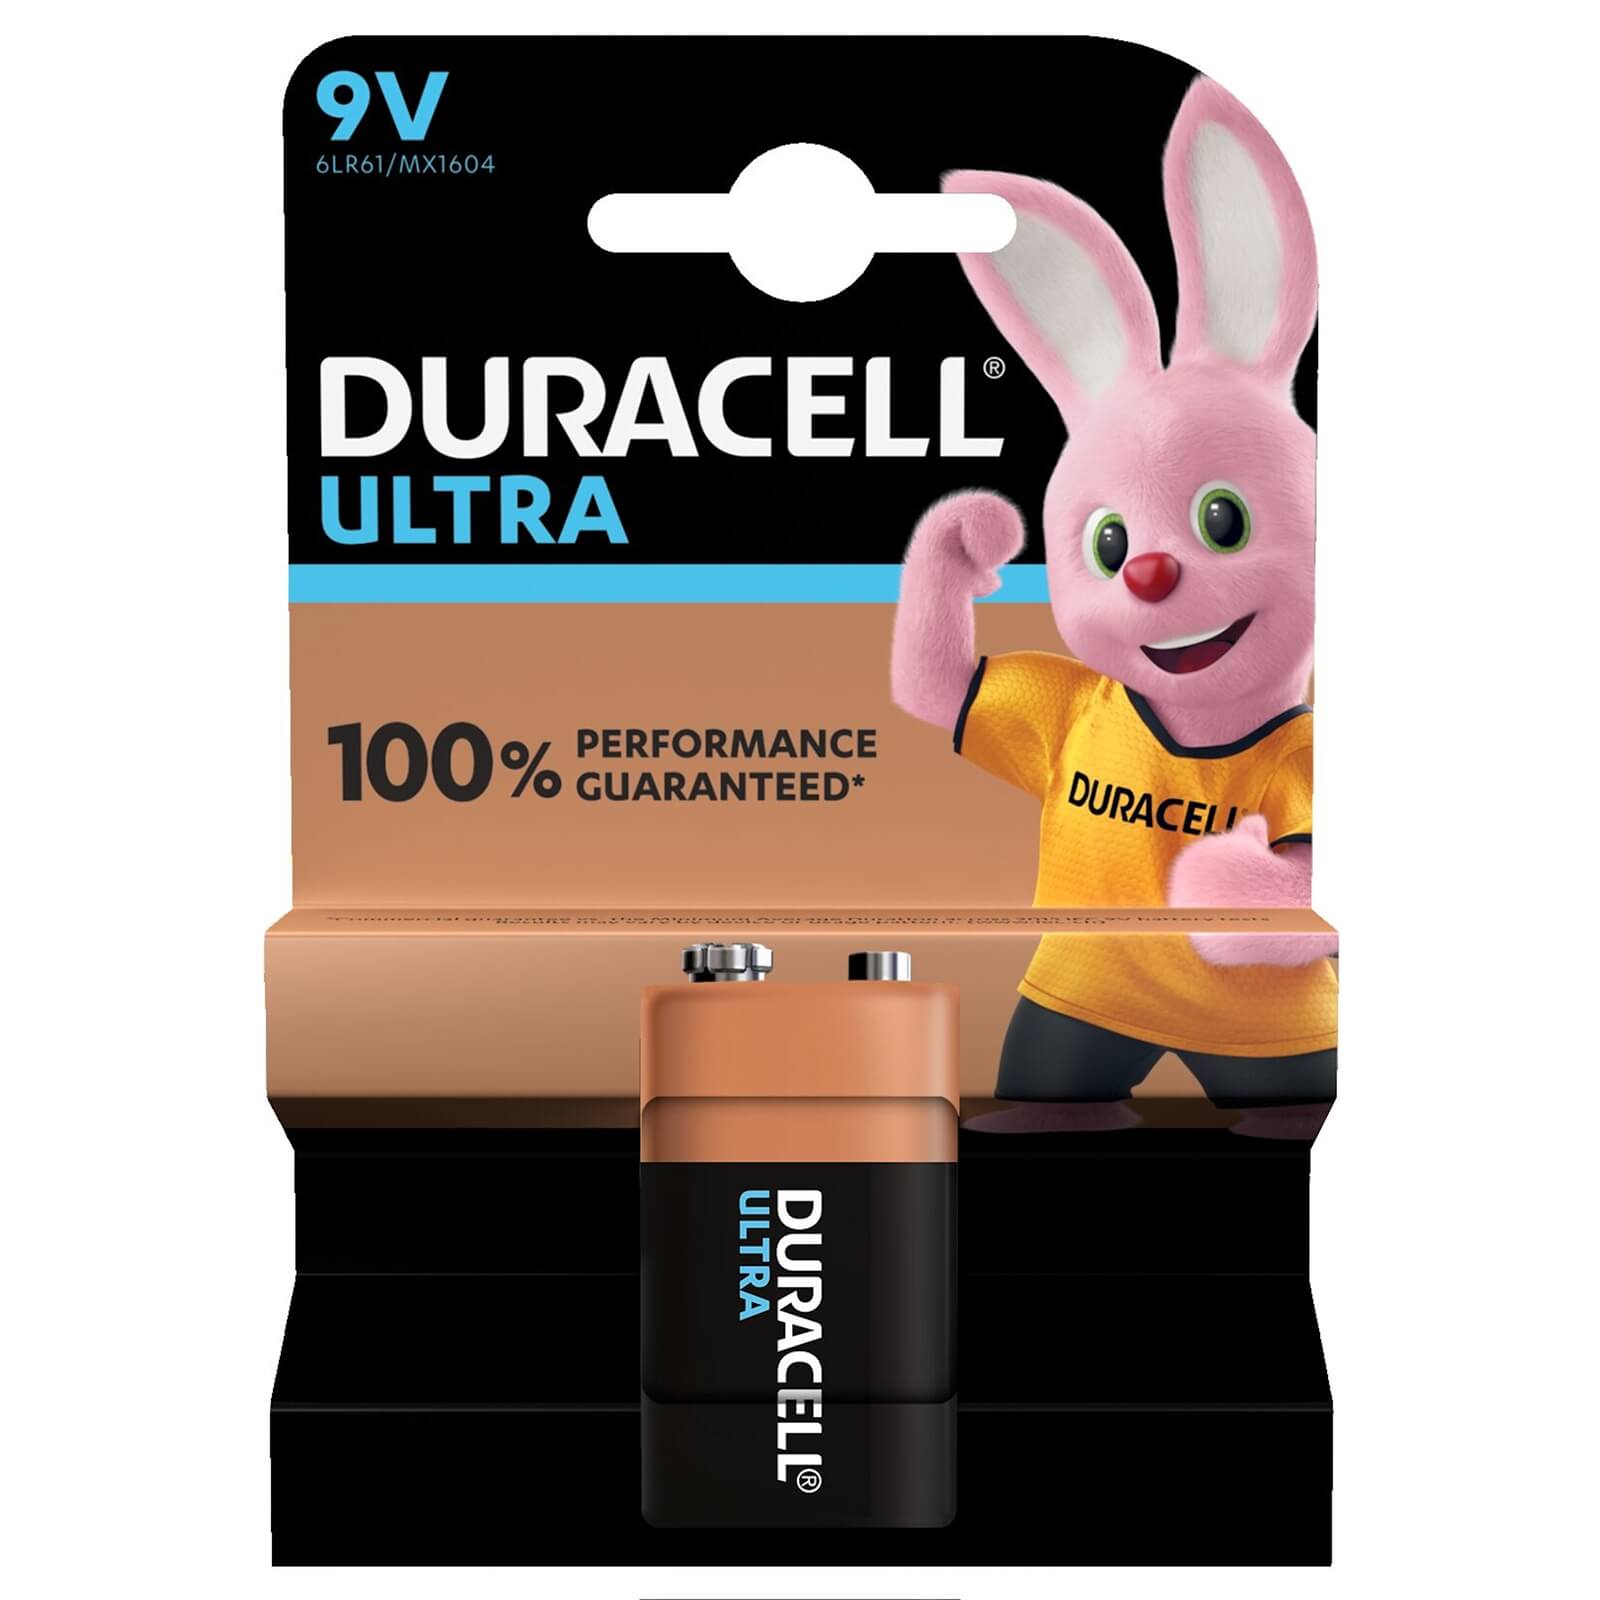 Duracell Ultra 9V Battery - 1 Pack